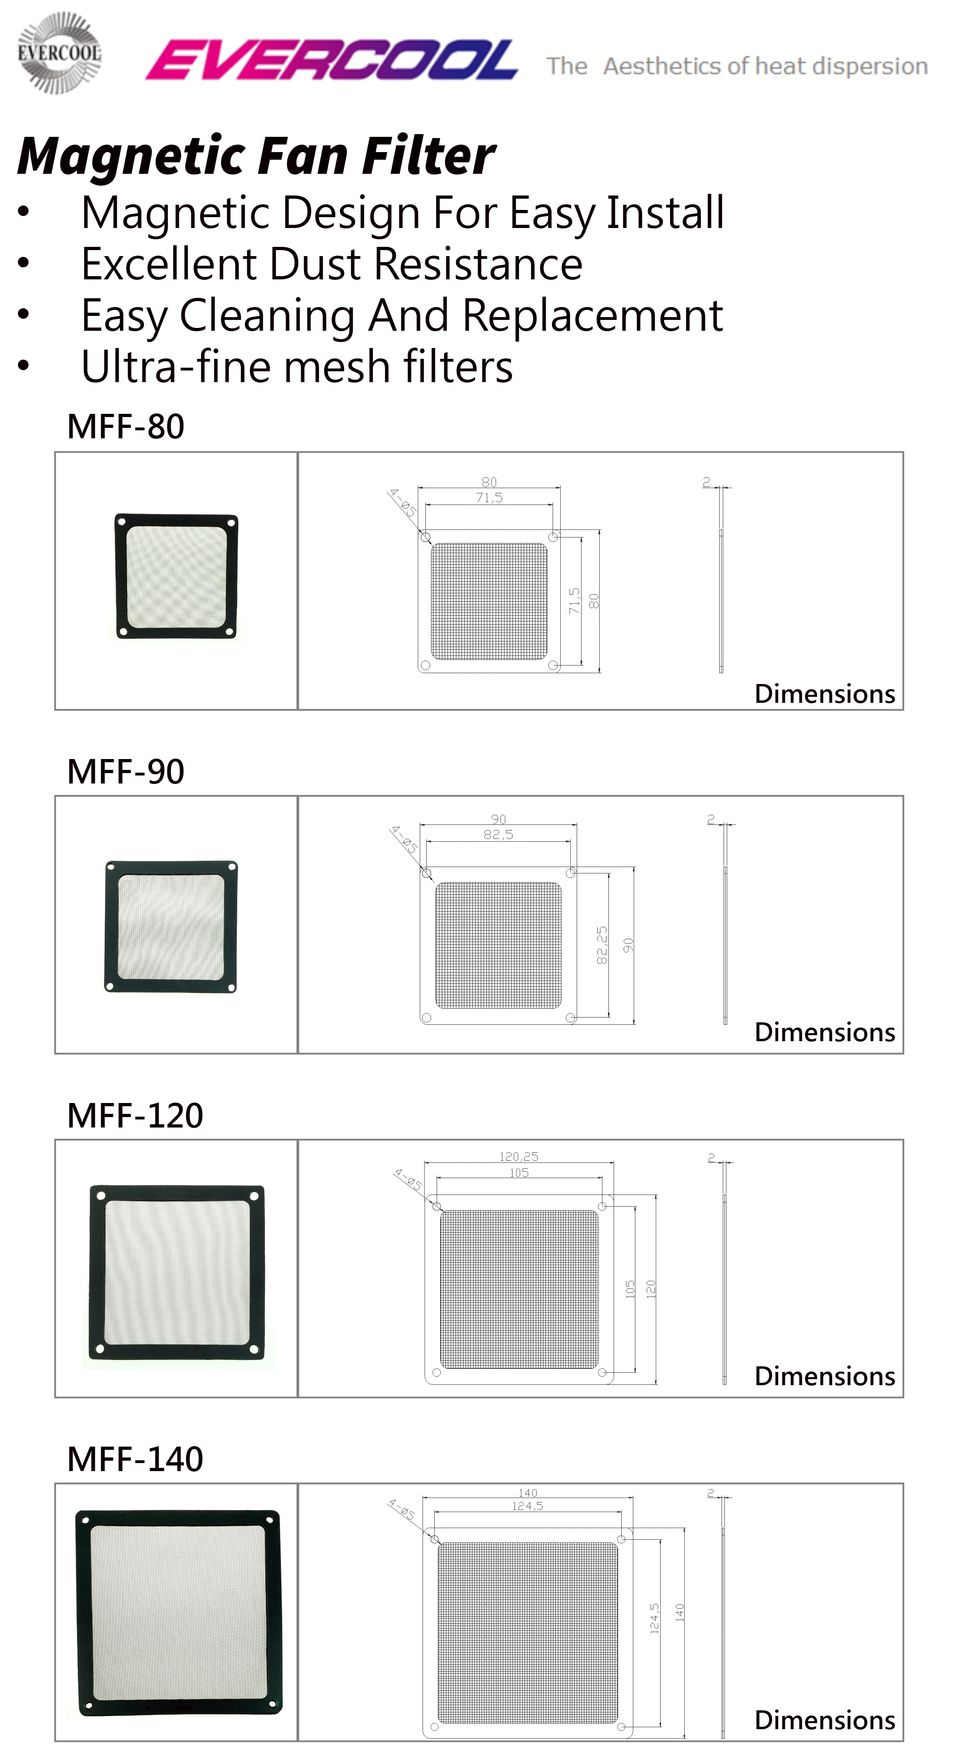 磁気防塵ファンフィルターの仕様および寸法図